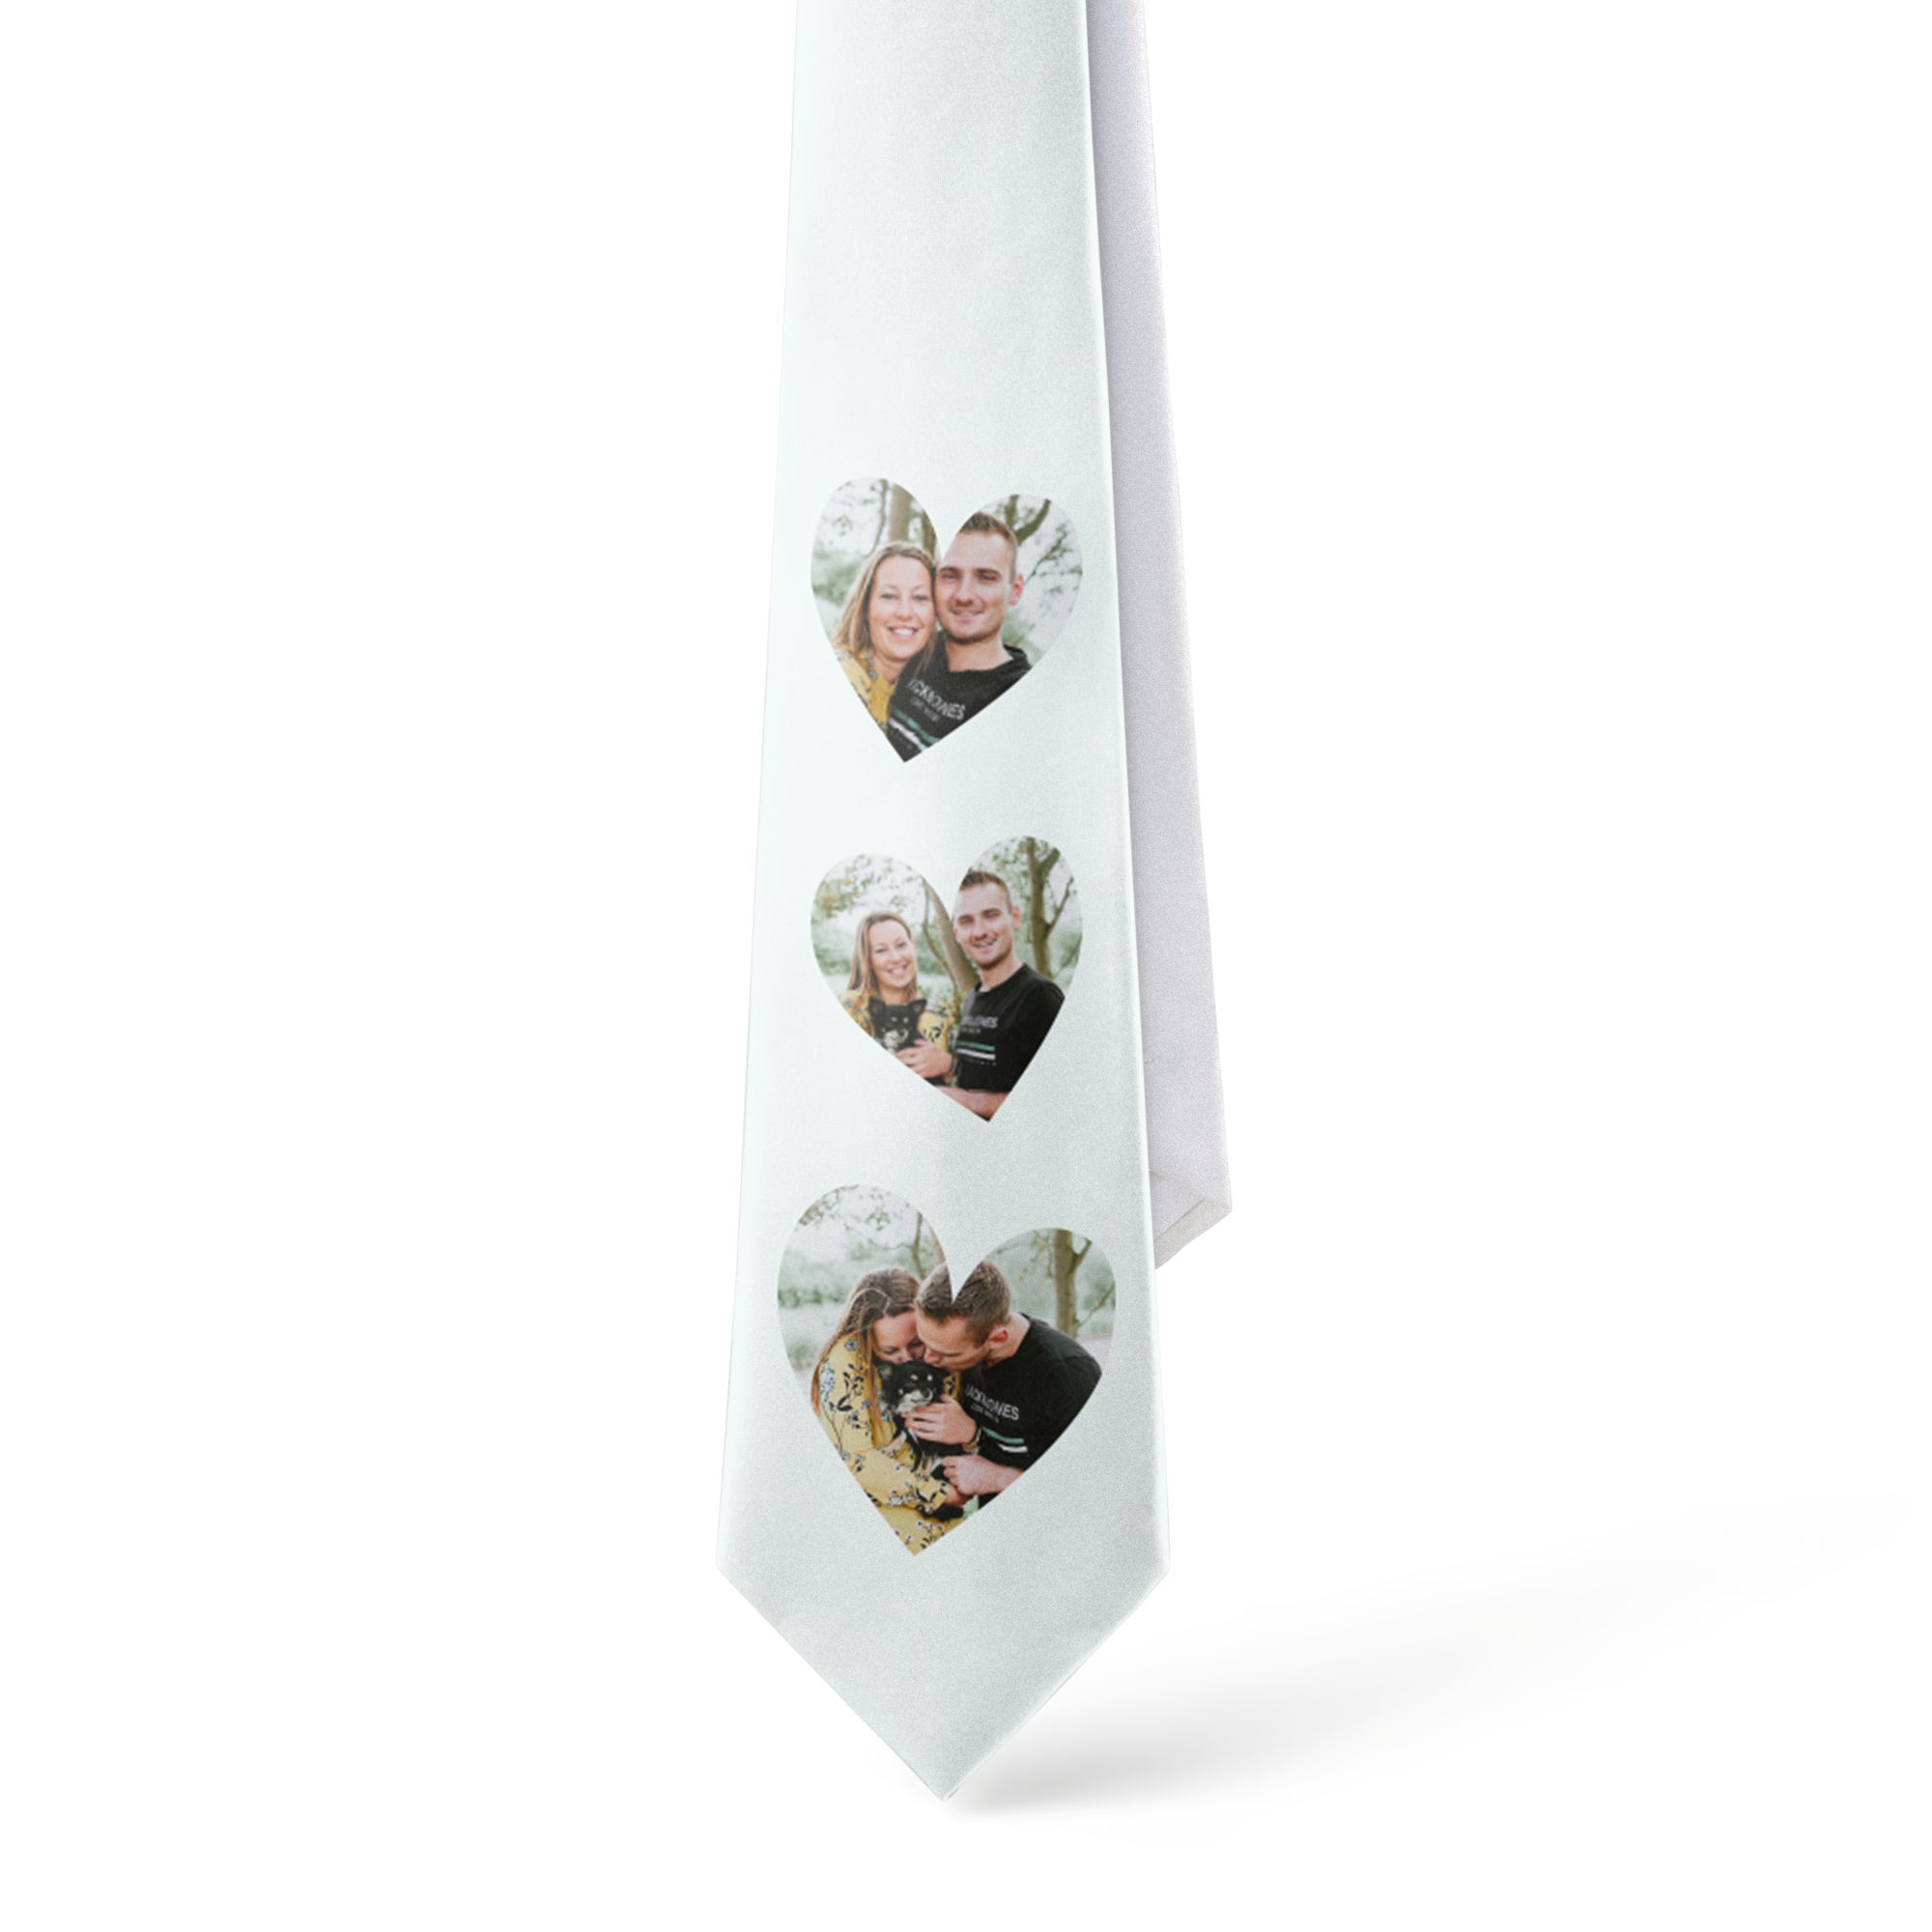 Individuellbekleidung - Krawatte personalisieren mit Foto Text - Onlineshop YourSurprise